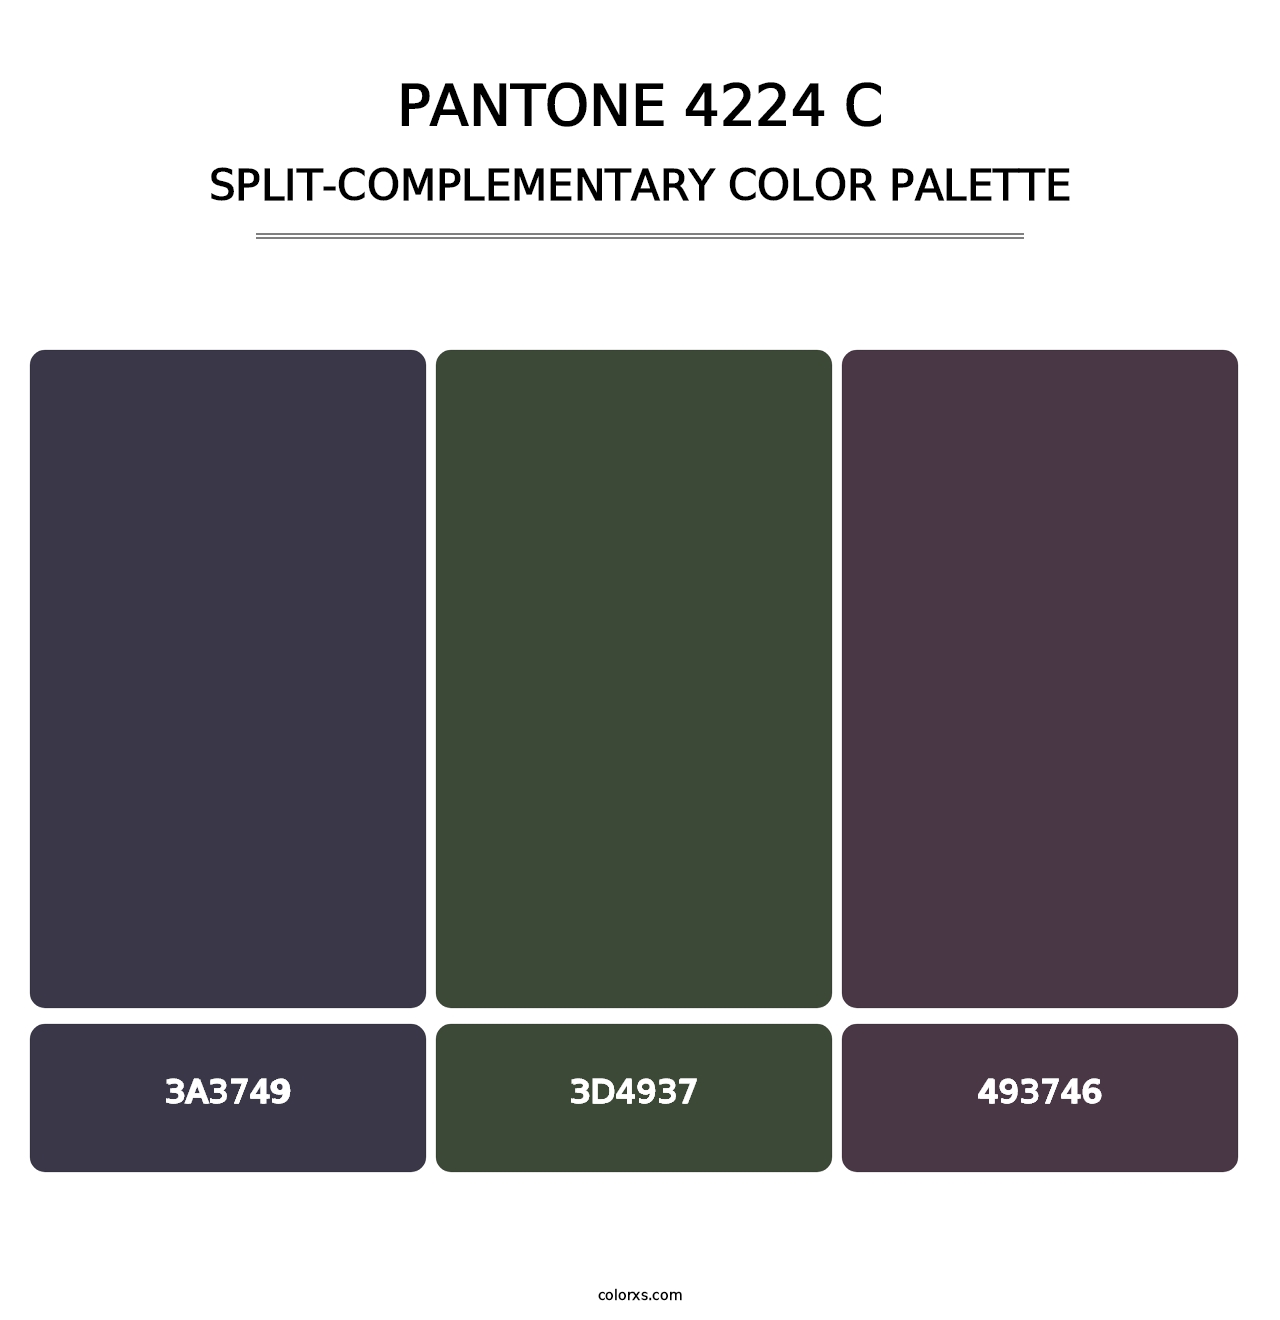 PANTONE 4224 C - Split-Complementary Color Palette